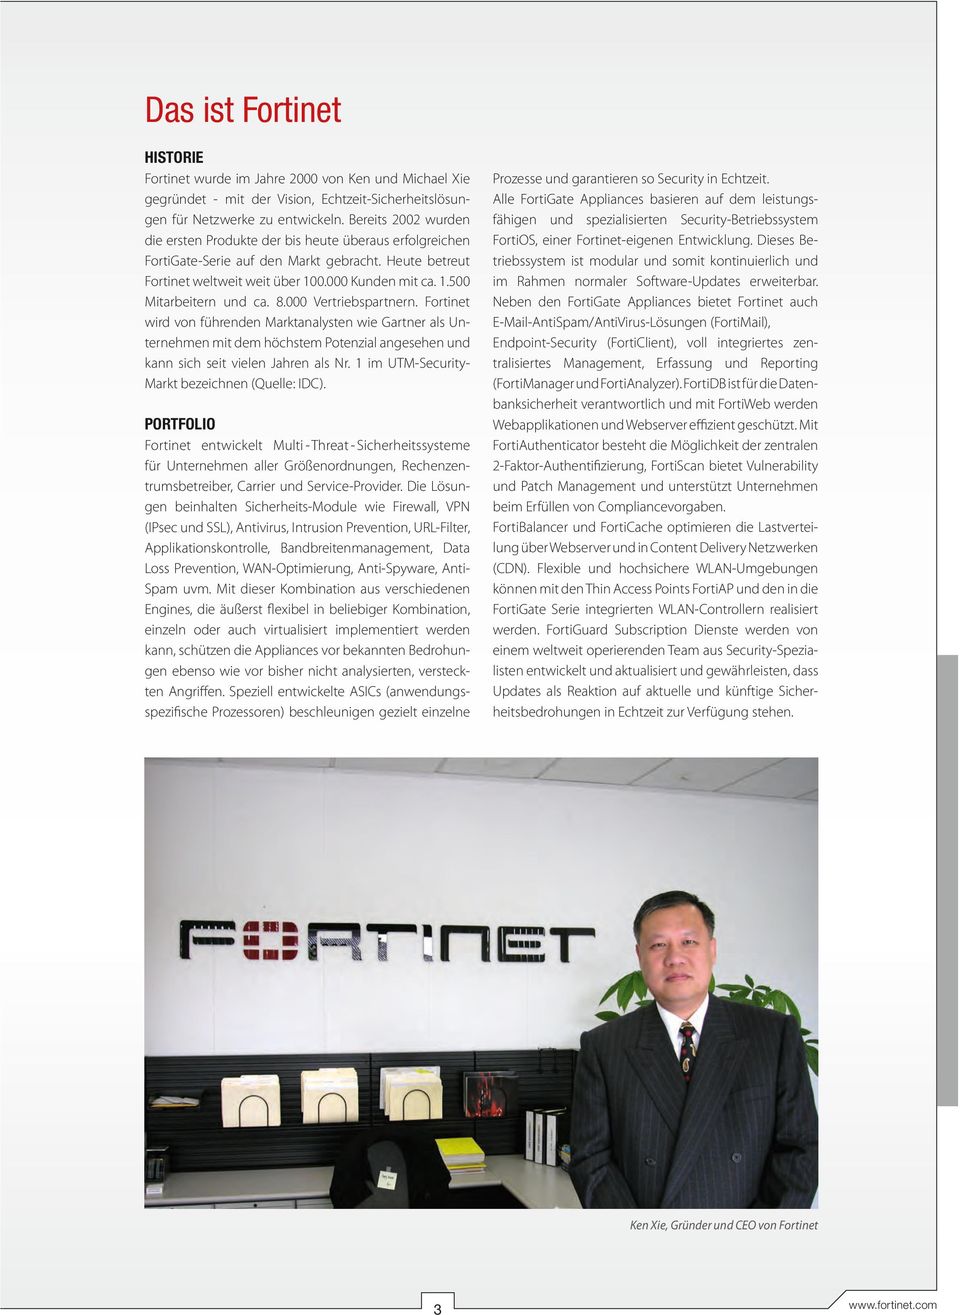 8.000 Vertriebspartnern. Fortinet wird von führenden Marktanalysten wie Gartner als Unternehmen mit dem höchstem Potenzial angesehen und kann sich seit vielen Jahren als Nr.